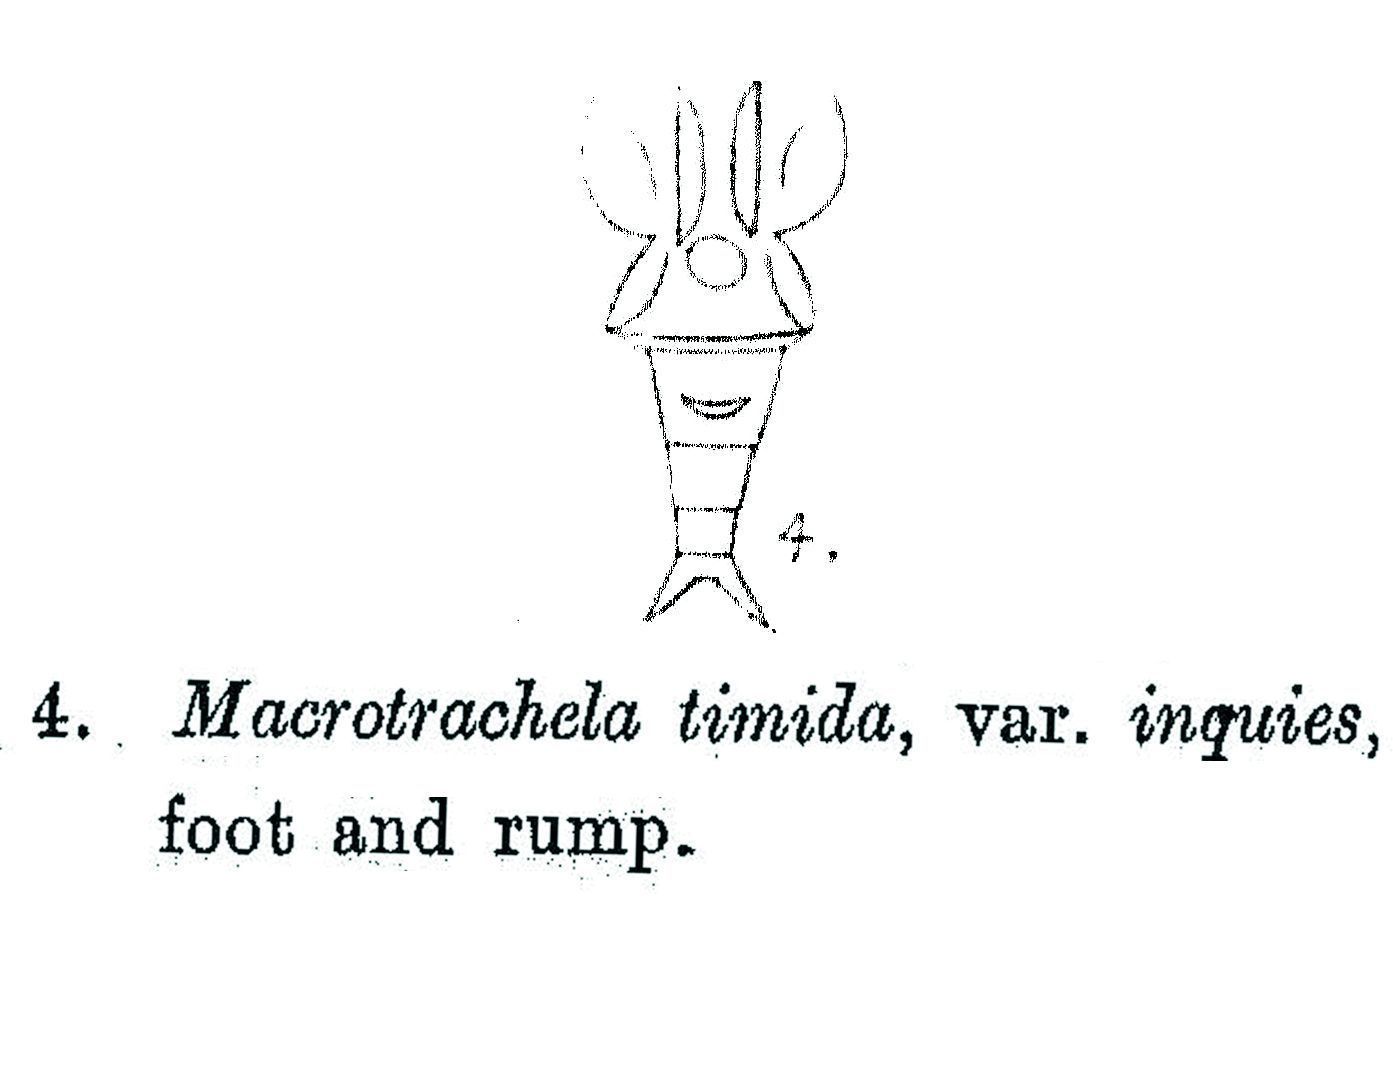 Image of Macrotrachela timida inquies Milne 1916